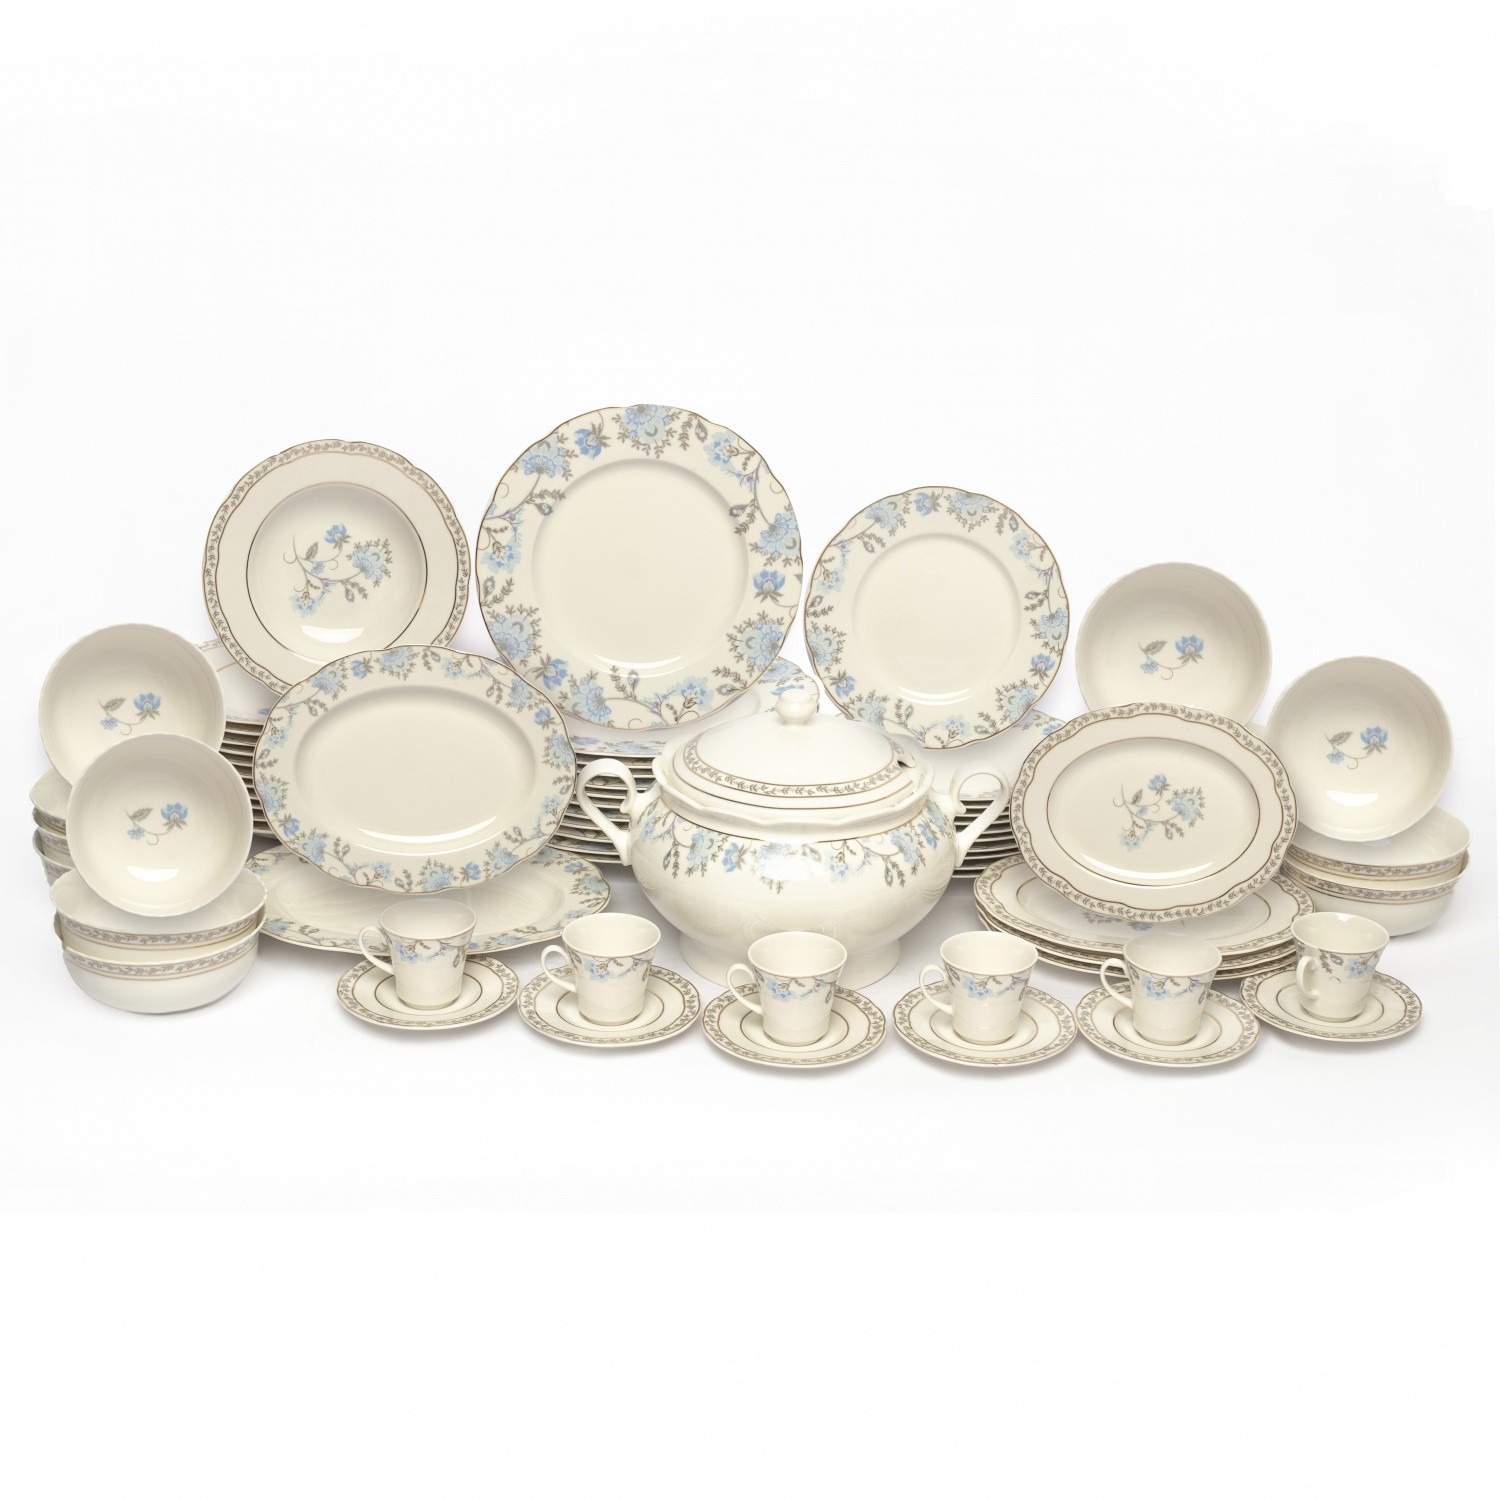 Комплект столовой посуды Kutahya porselen Olympos, 68 предметов